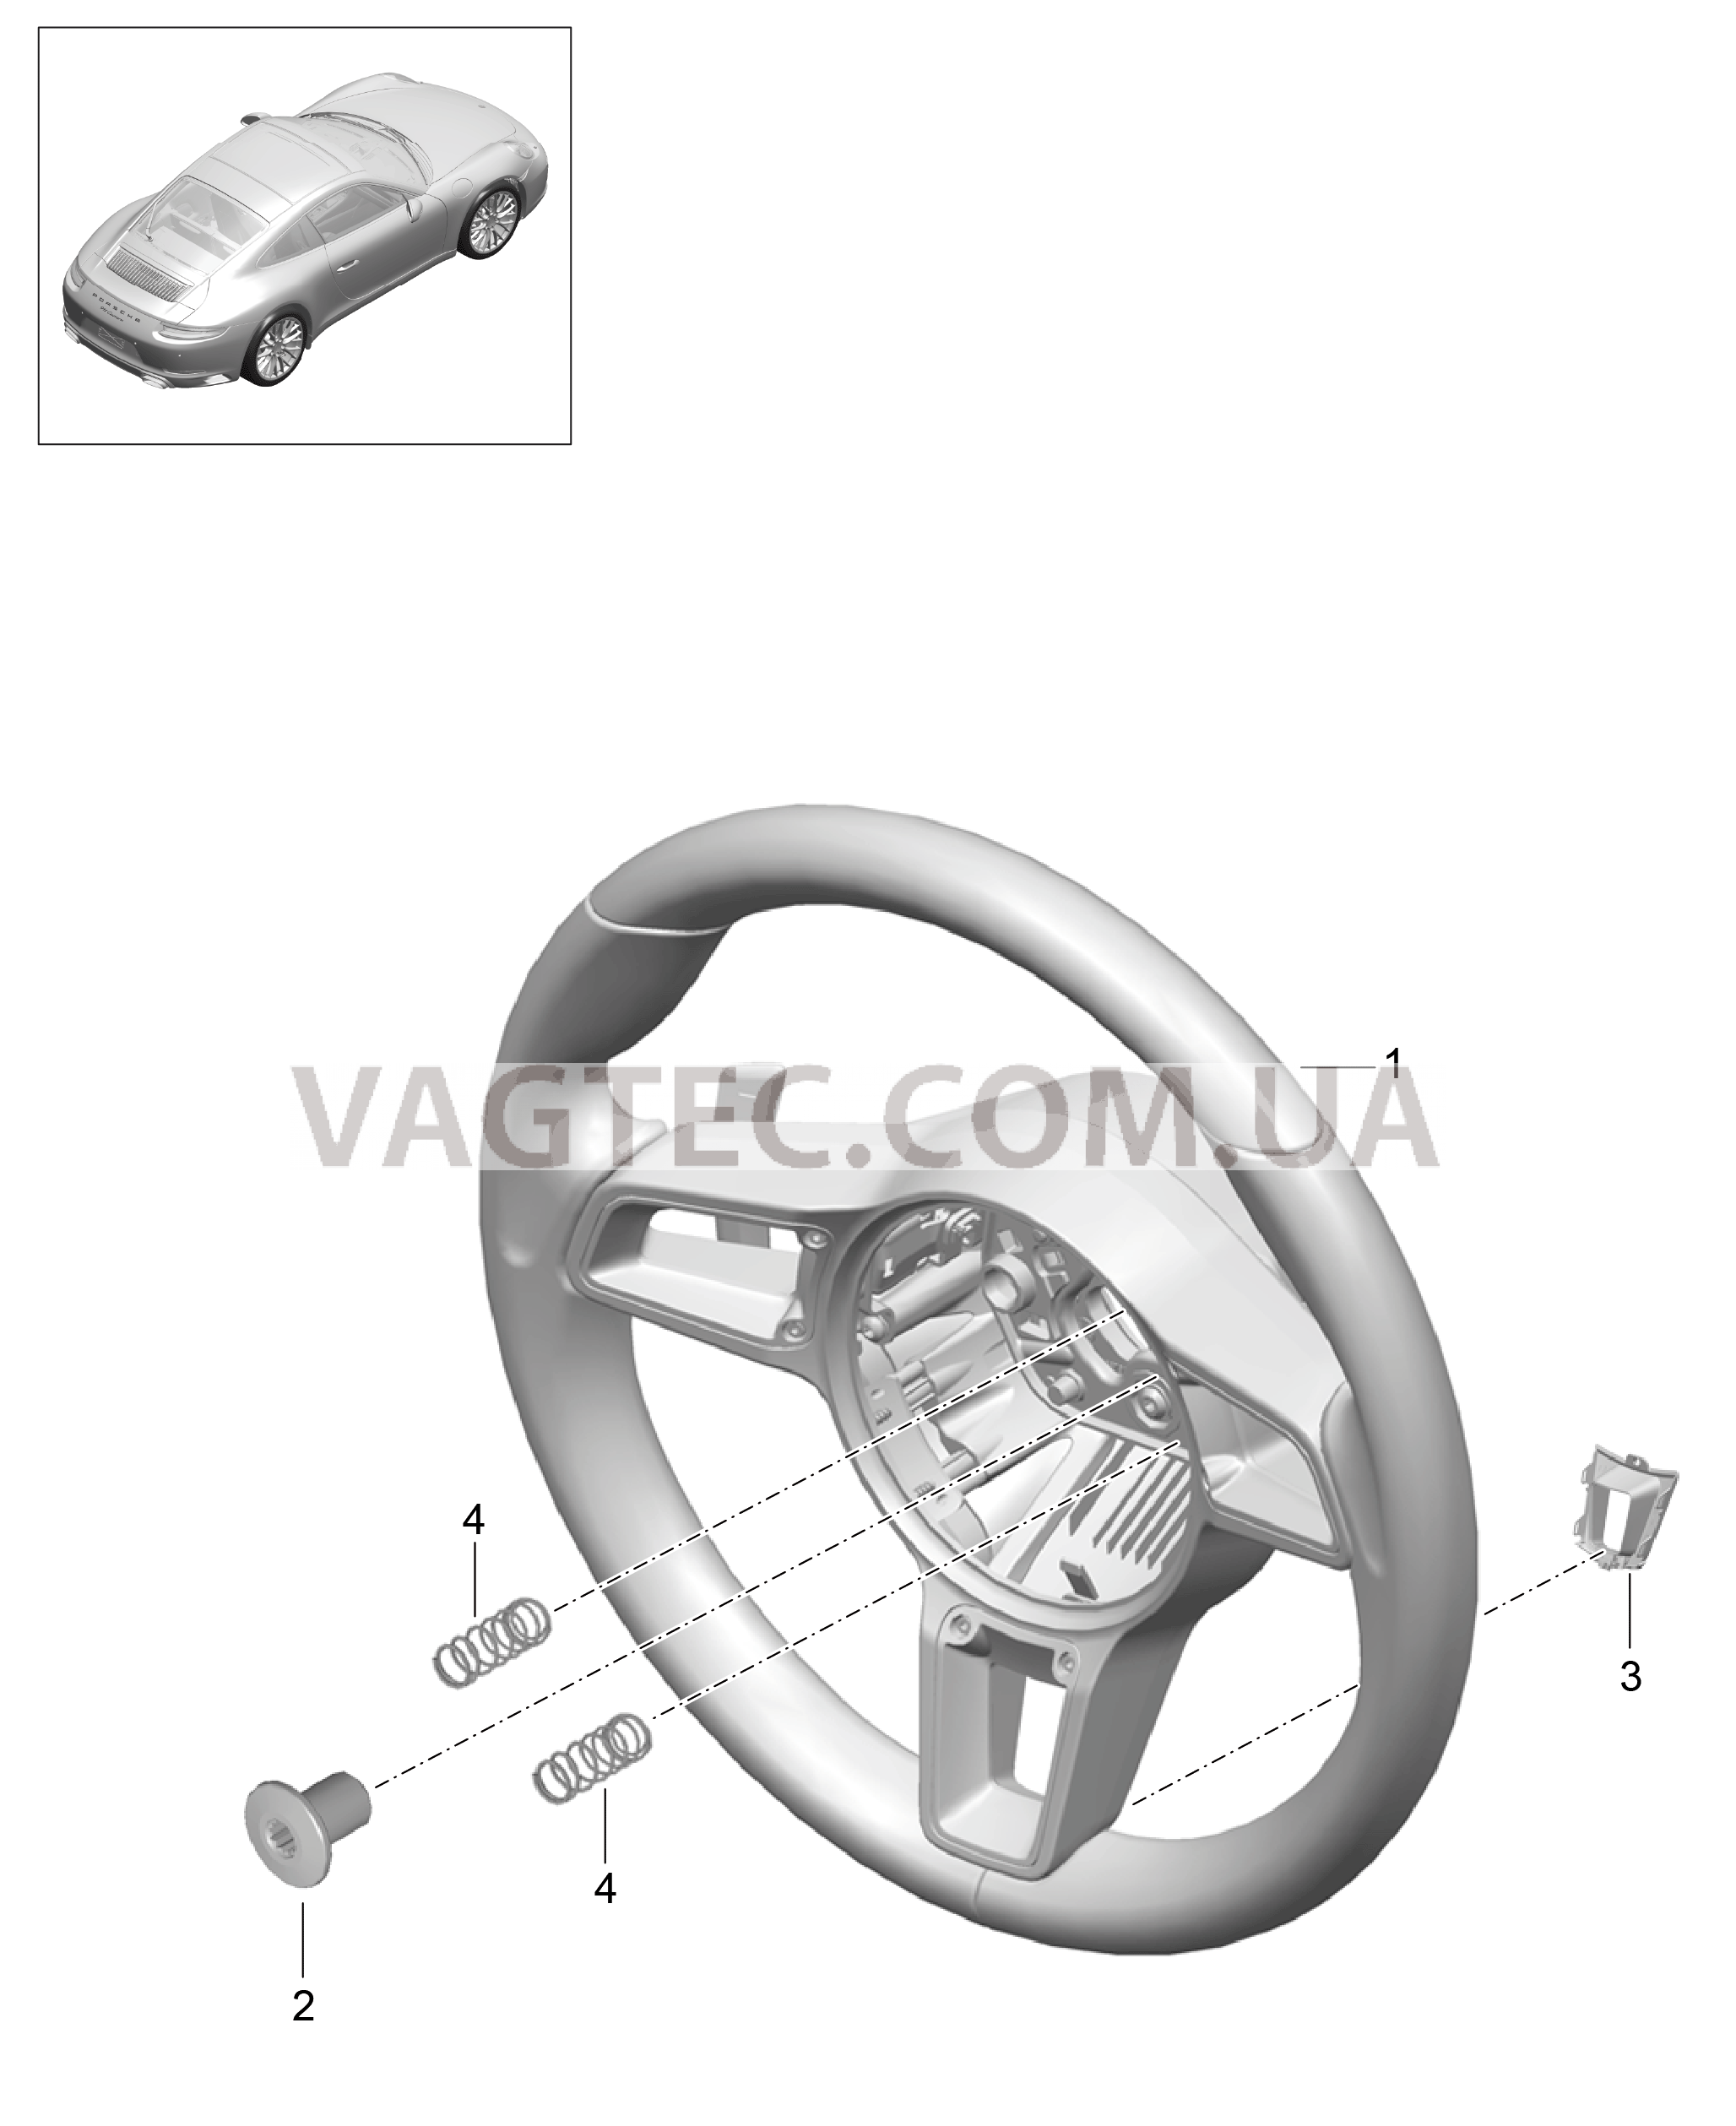 403-005 Рулевые колеса, Мкпп
						
						I487 для PORSCHE 911.Carrera 2017-2018USA